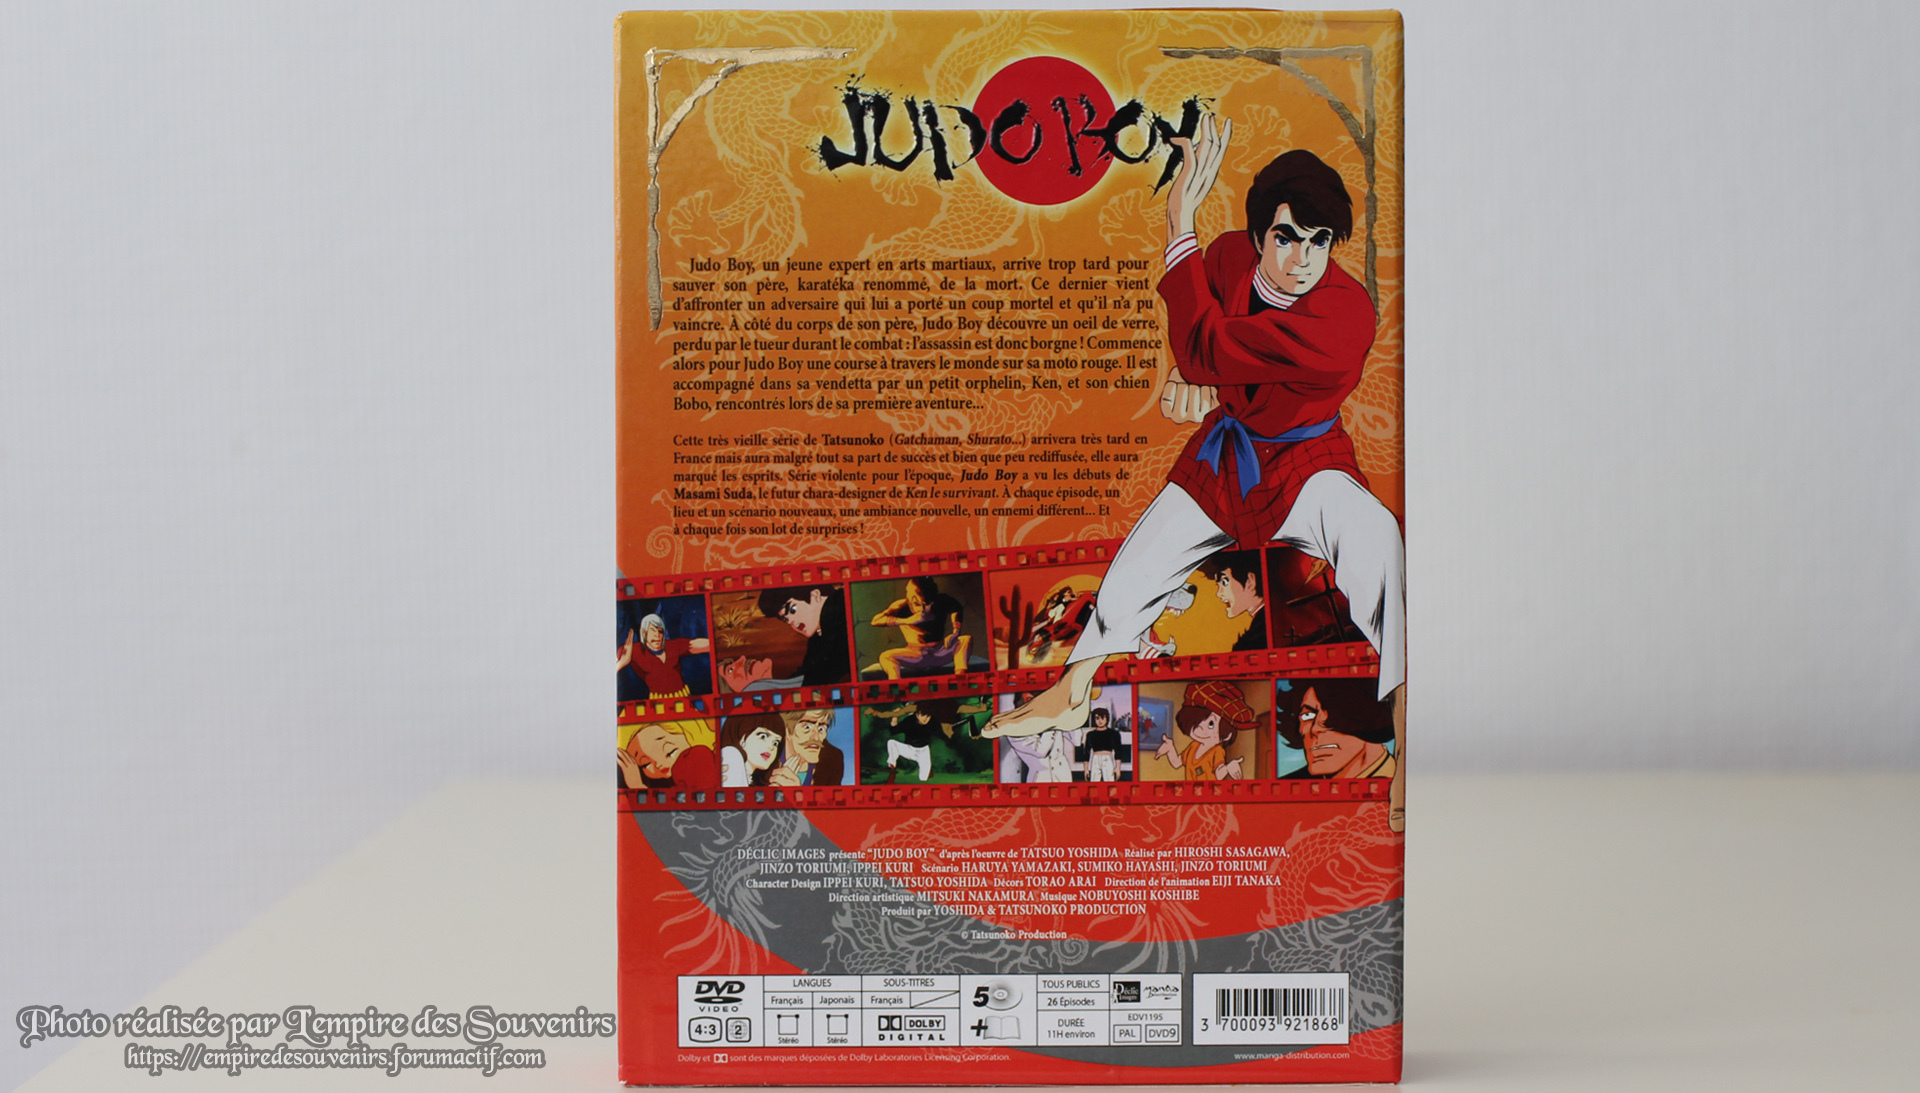 Judo Boy, test DVD G200